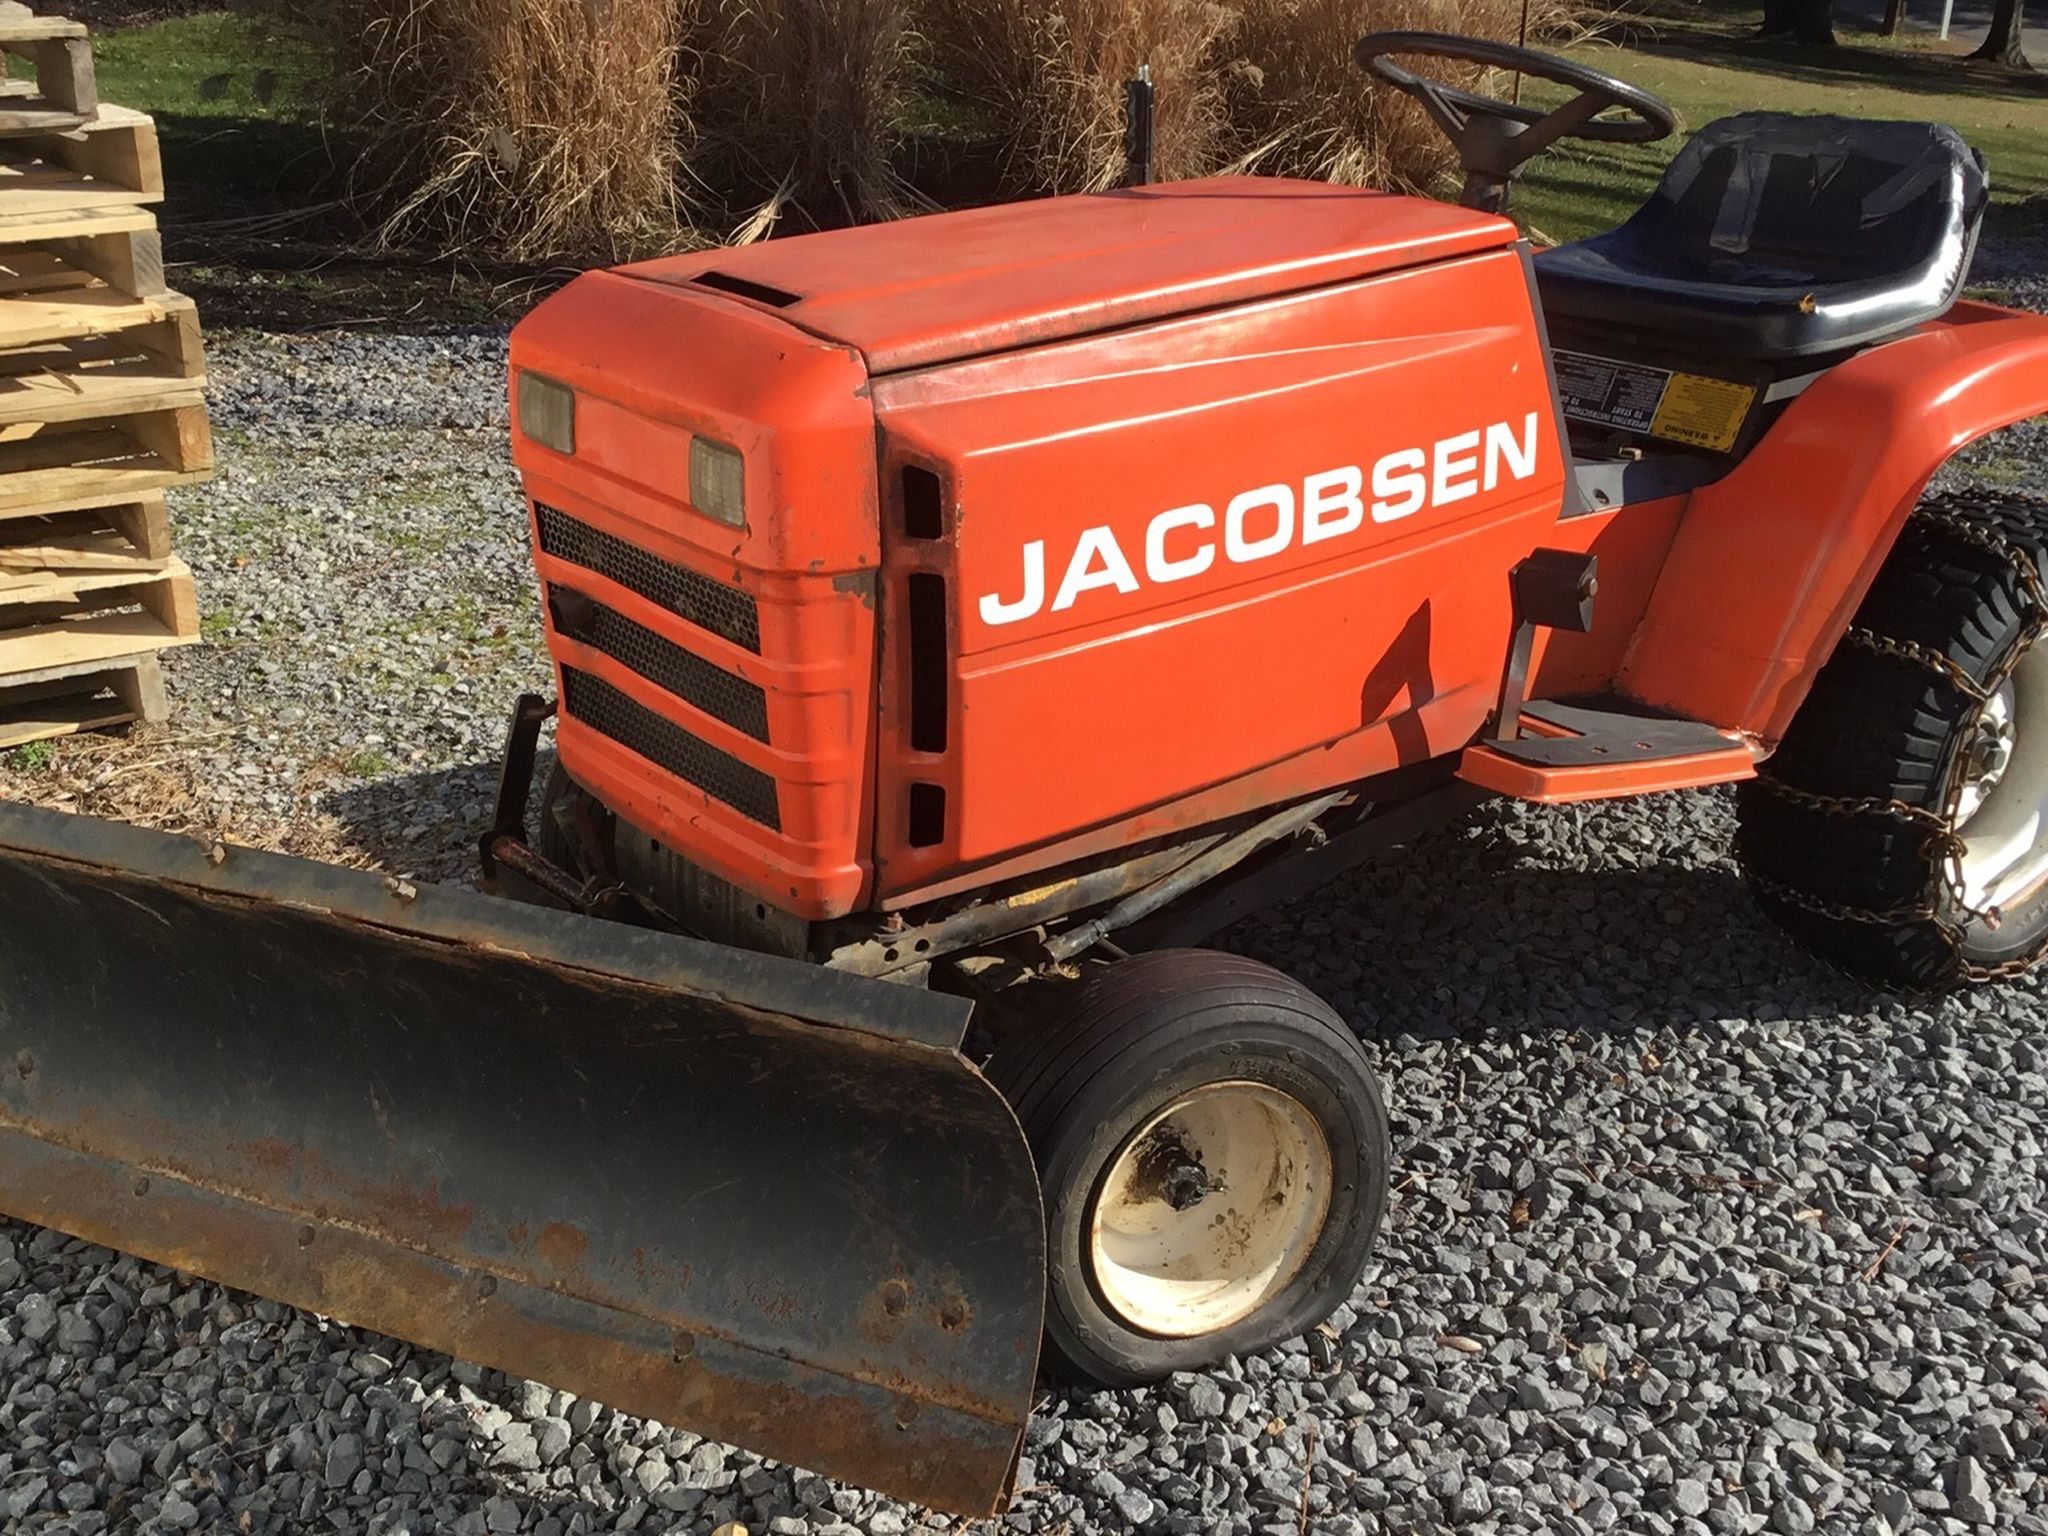 Jacobsen Garden Tractor $375